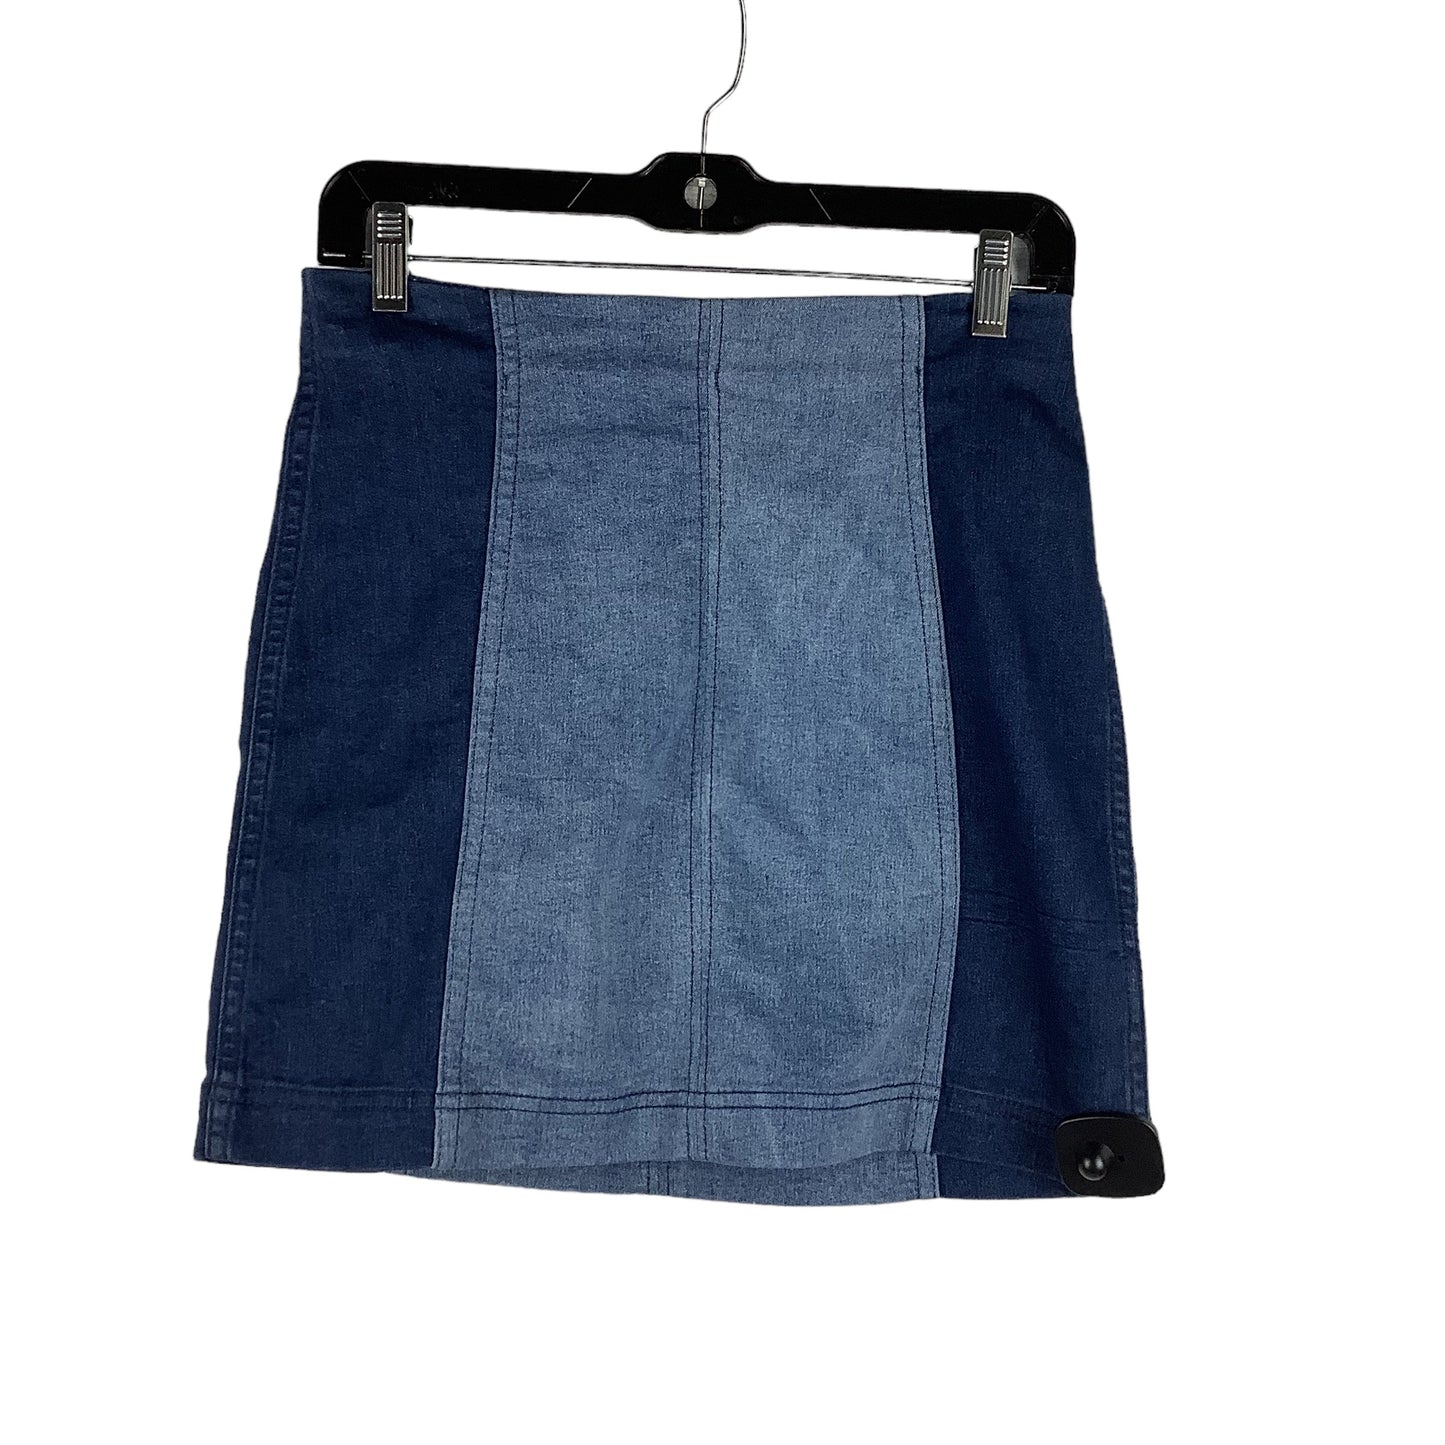 Blue Denim Skirt Mini & Short Free People, Size 6